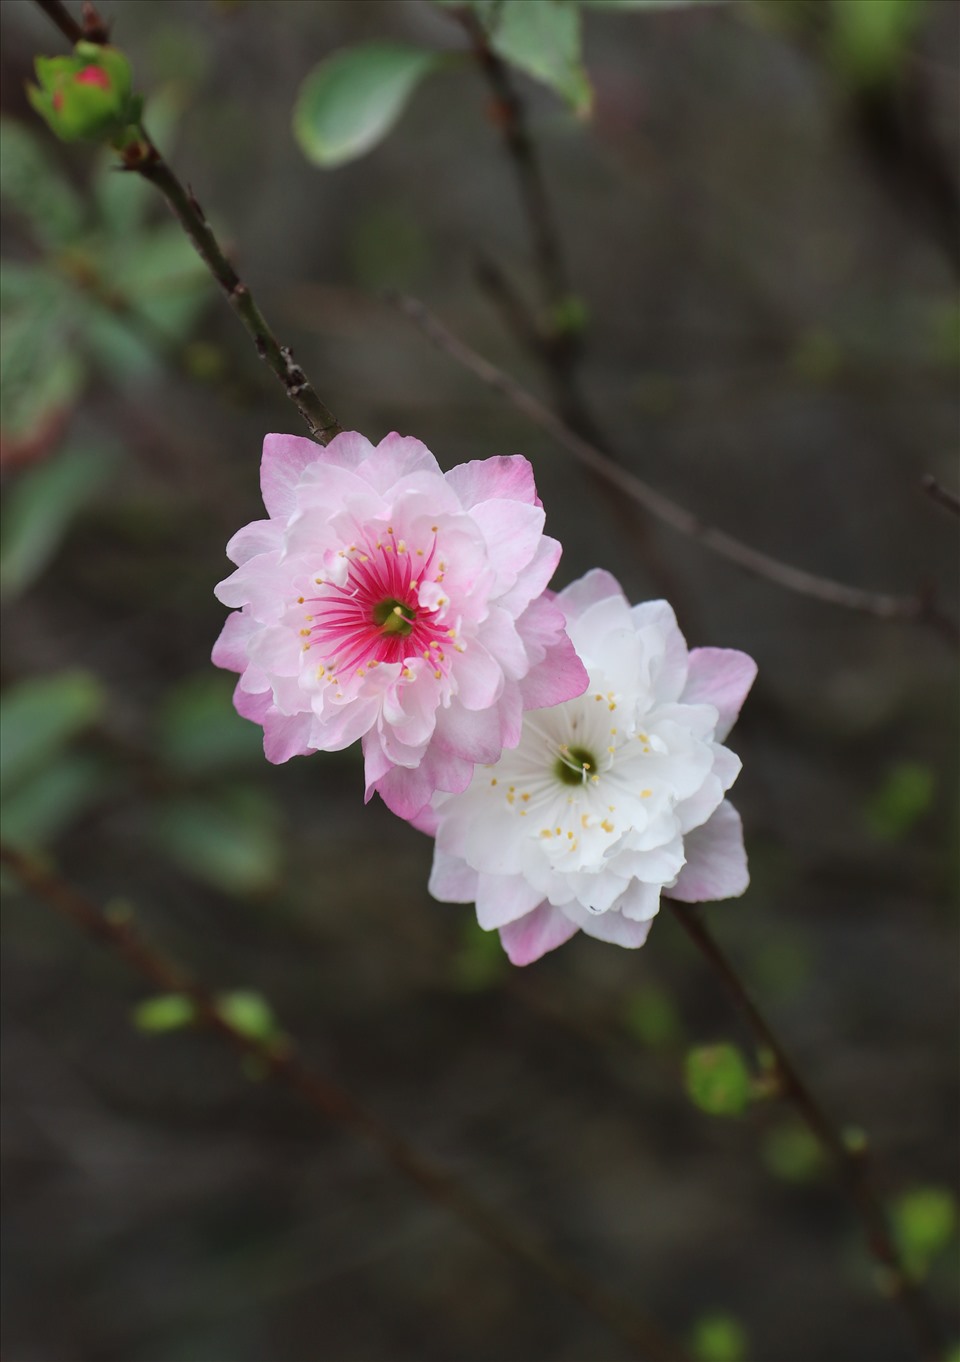 Đến khi sắp tàn, hoa chuyển dần từ màu trắng sang màu hồng, trông vô cùng đẹp mắt.